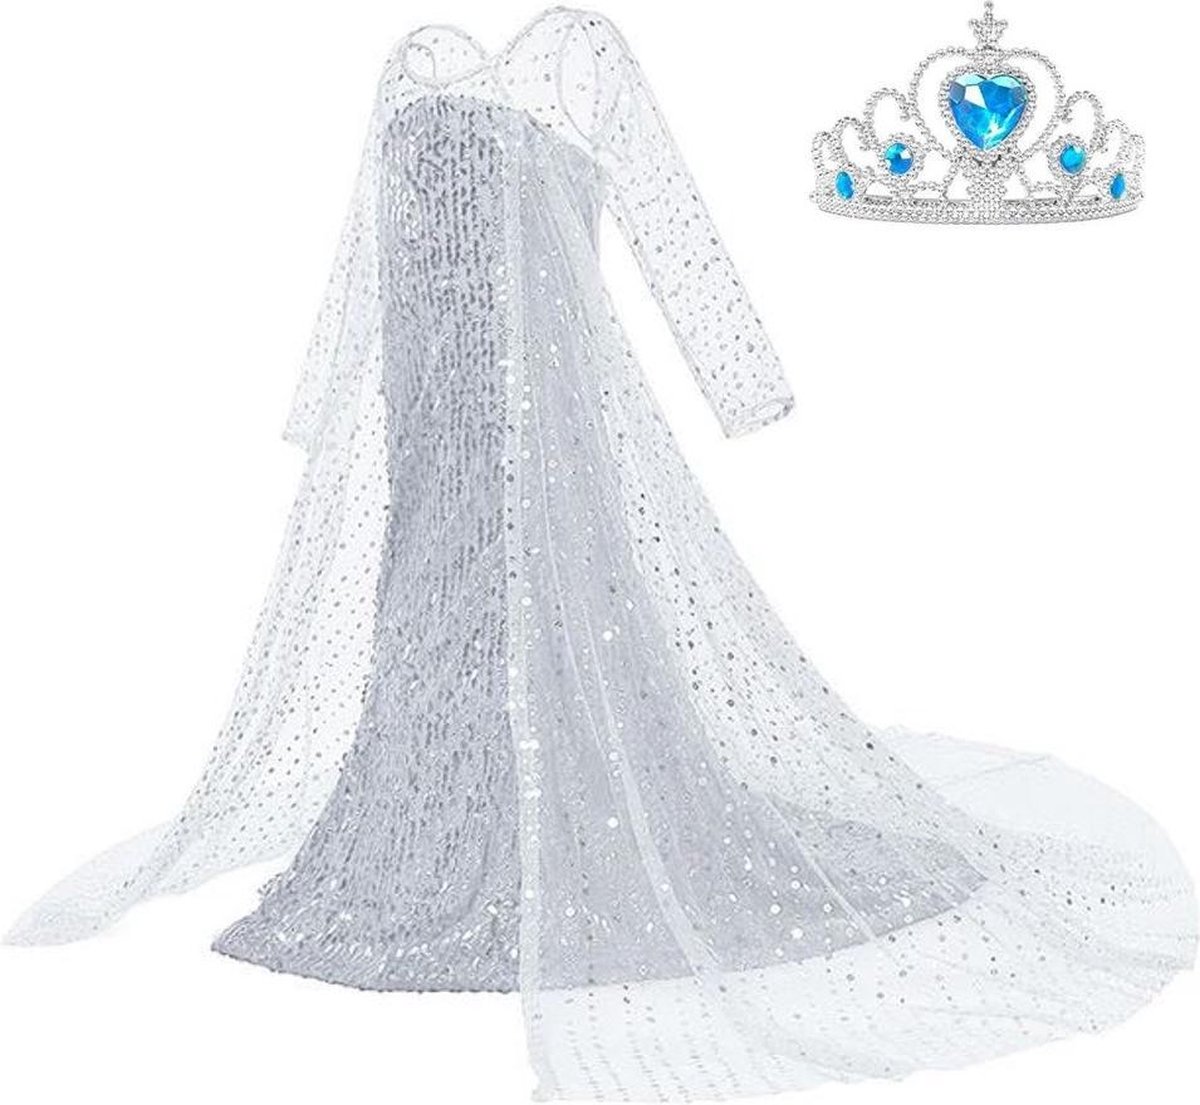 Frozen 2 Elsa jurk IJskoningin Deluxe met lange sleep 110-116 (120) + kroon Prinsessen jurk verkleedkleding